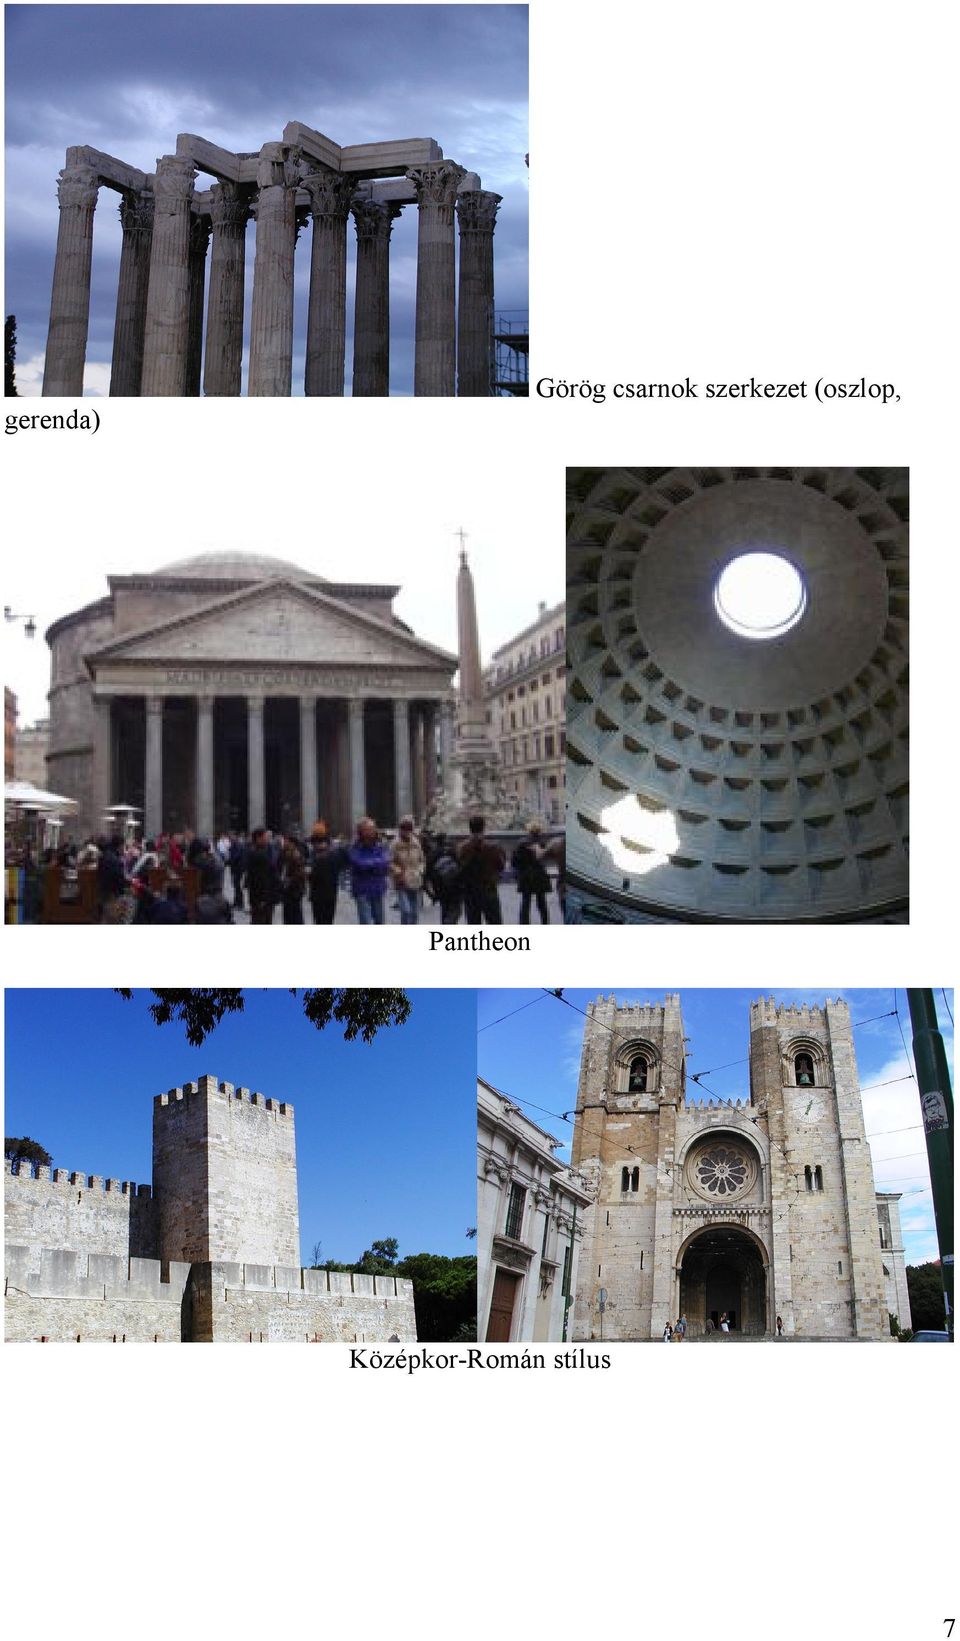 (oszlop, Pantheon